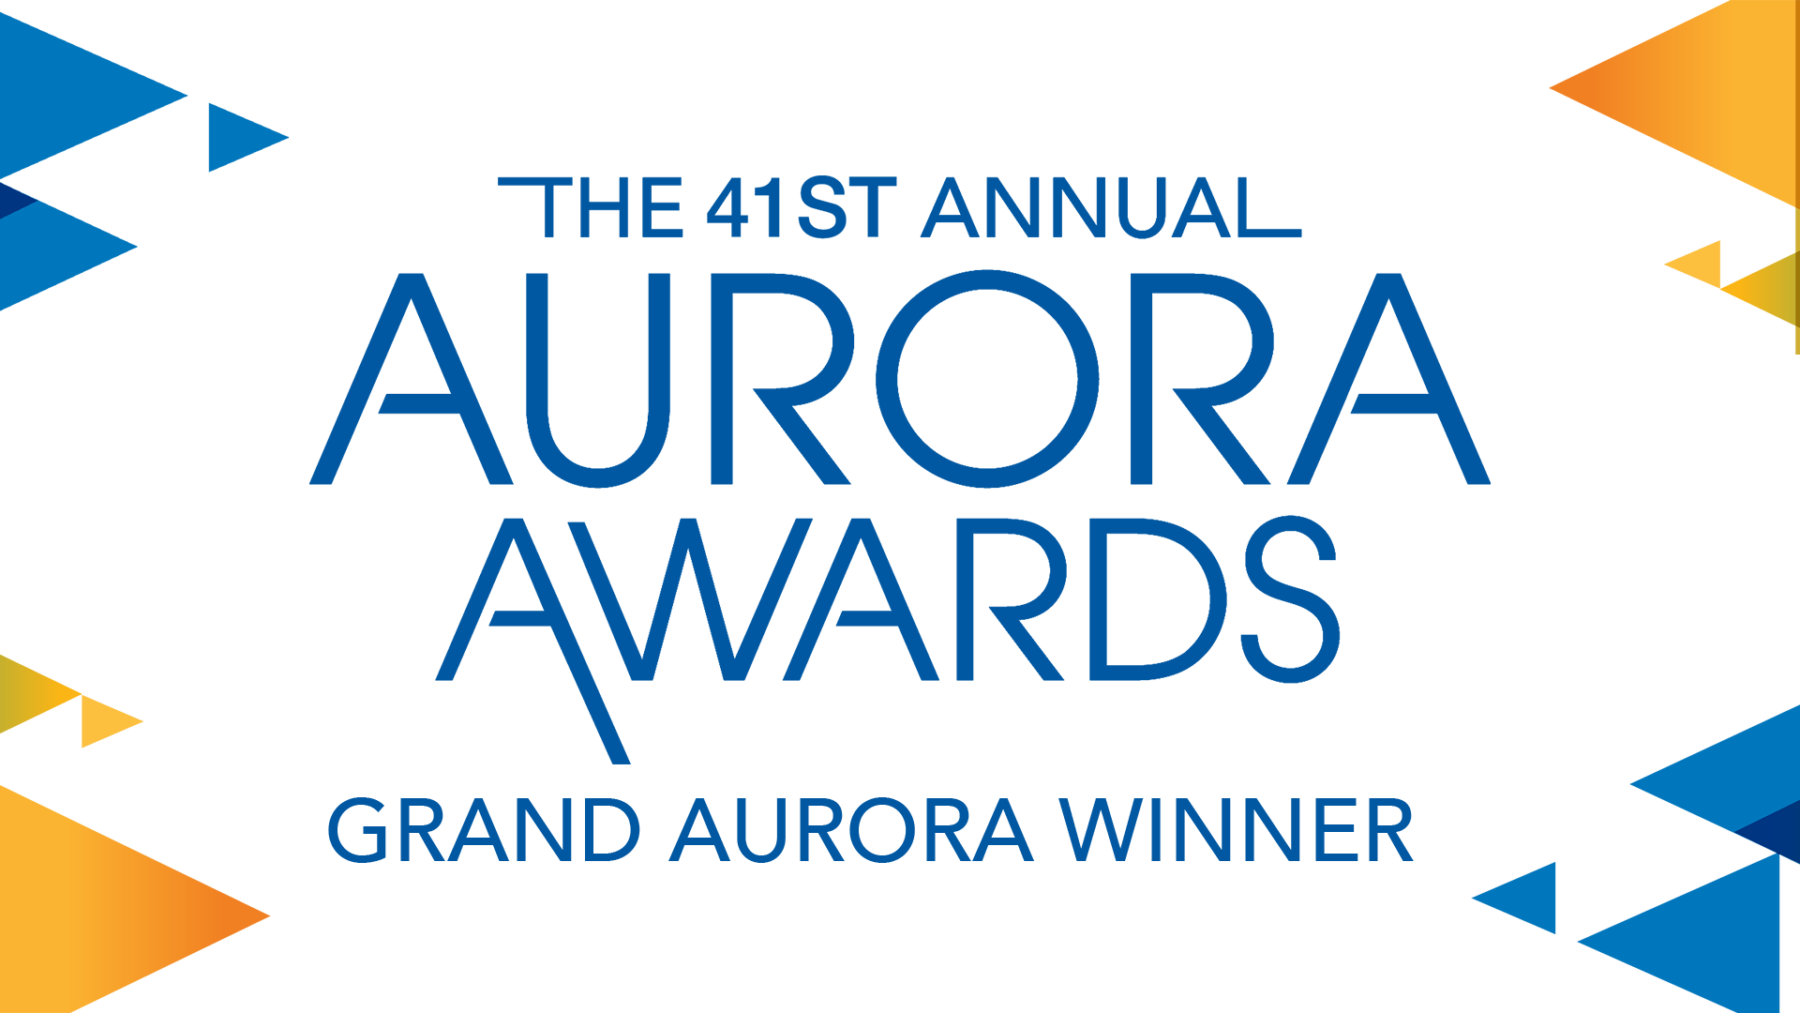 GRAND-AURORA-logo-for-website-1800x1013